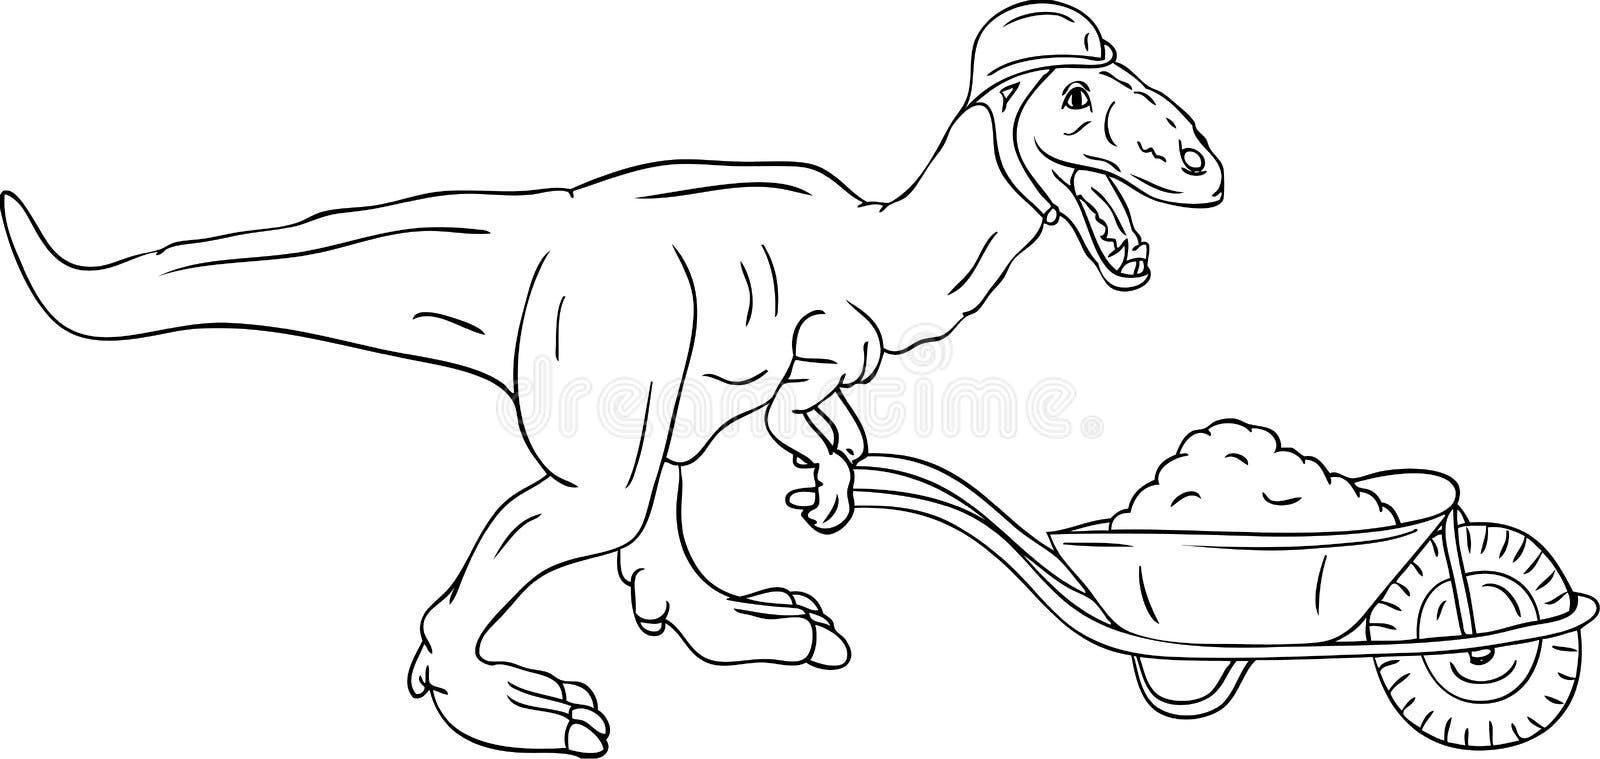 única linha contínua desenho garotinha homem das cavernas montando  brontossauro. jovem sentado nas costas do dinossauro.